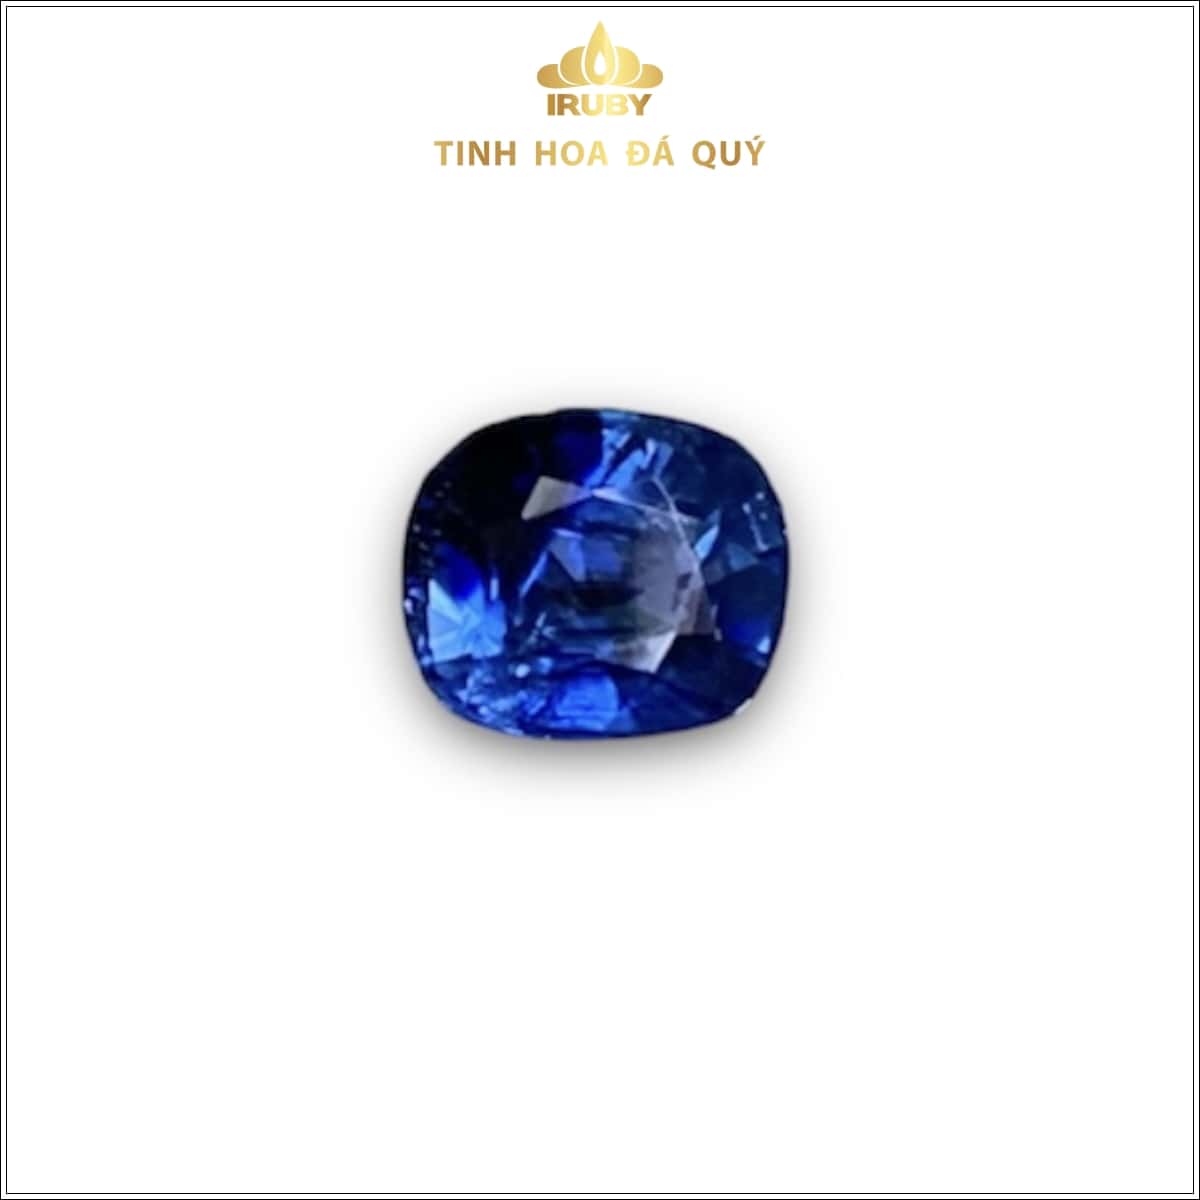 Viên Sapphire xanh lam hoàng gia 1,23ct - IRBS139 2311123